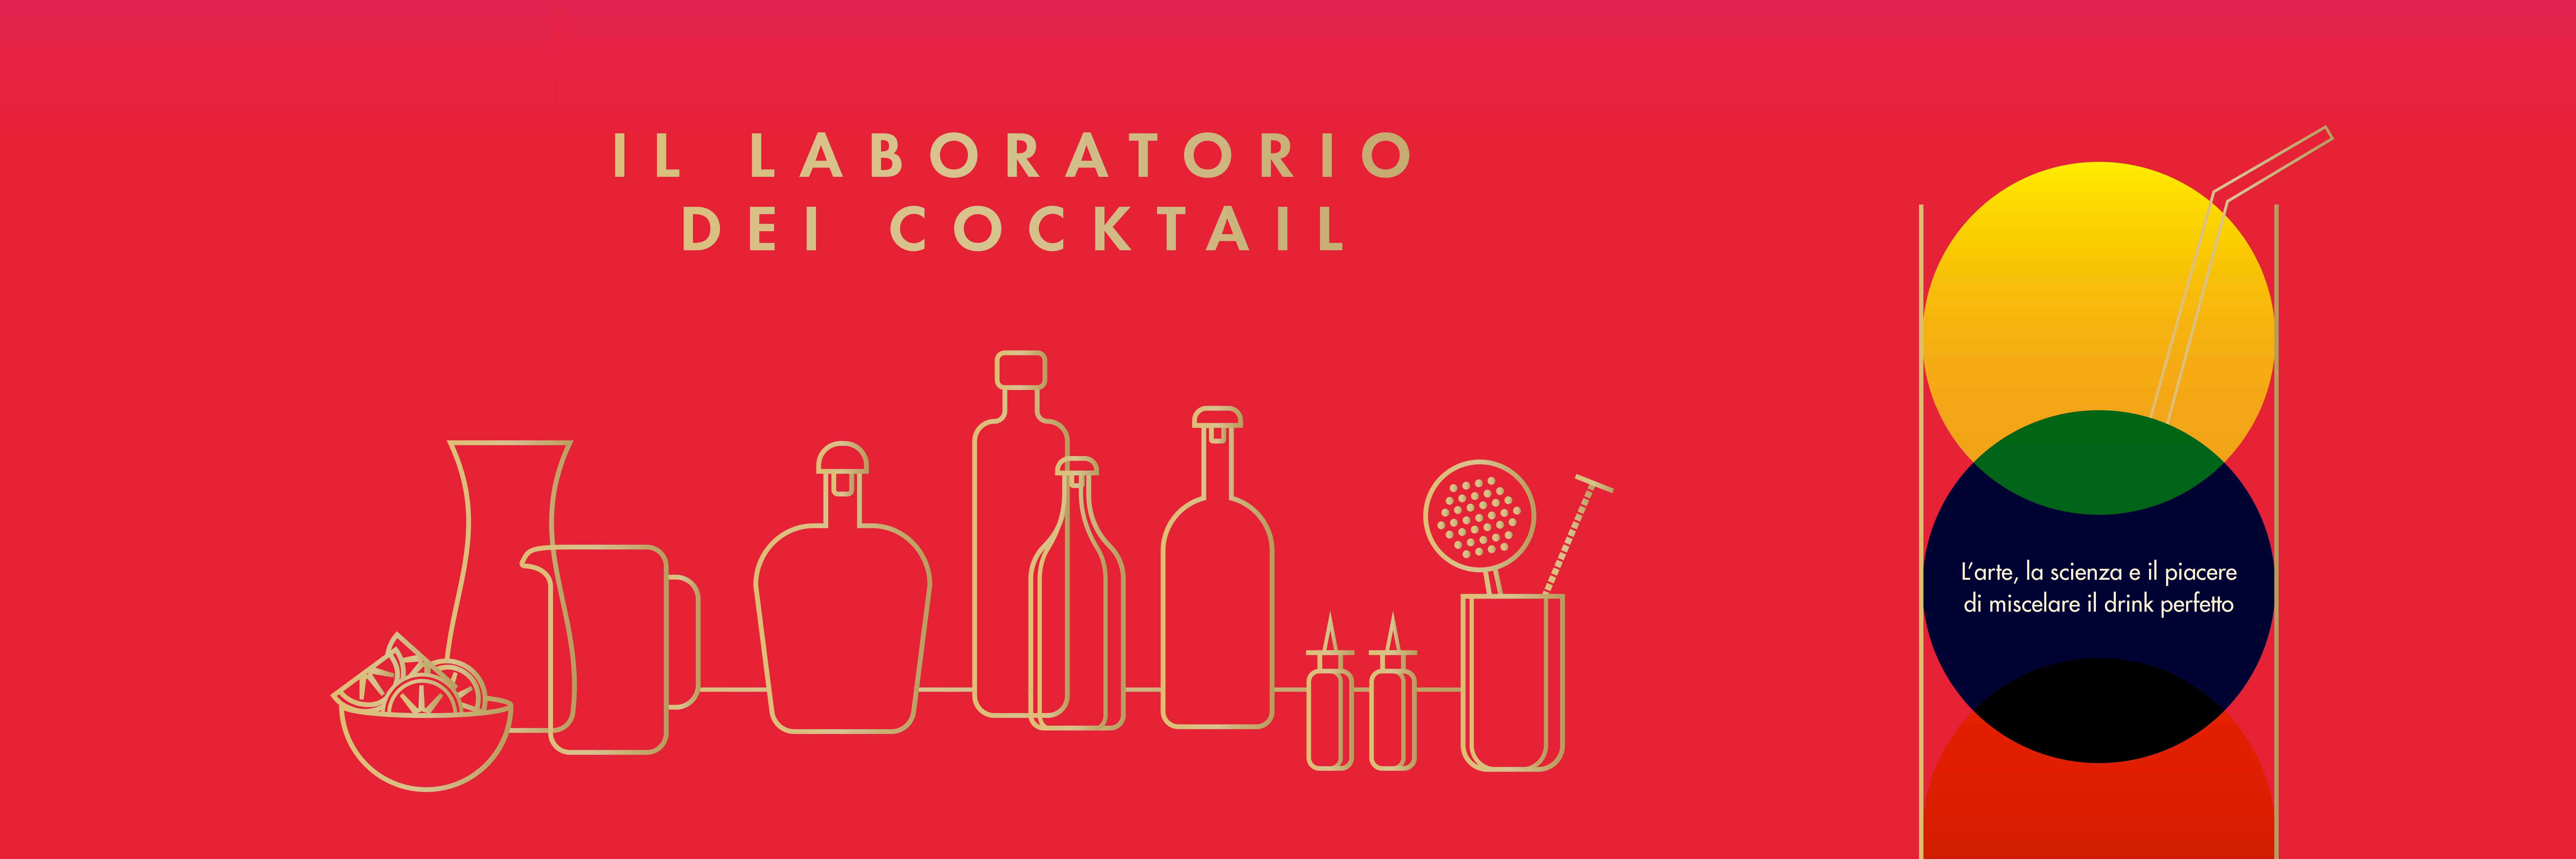 Il laboratorio dei cocktail